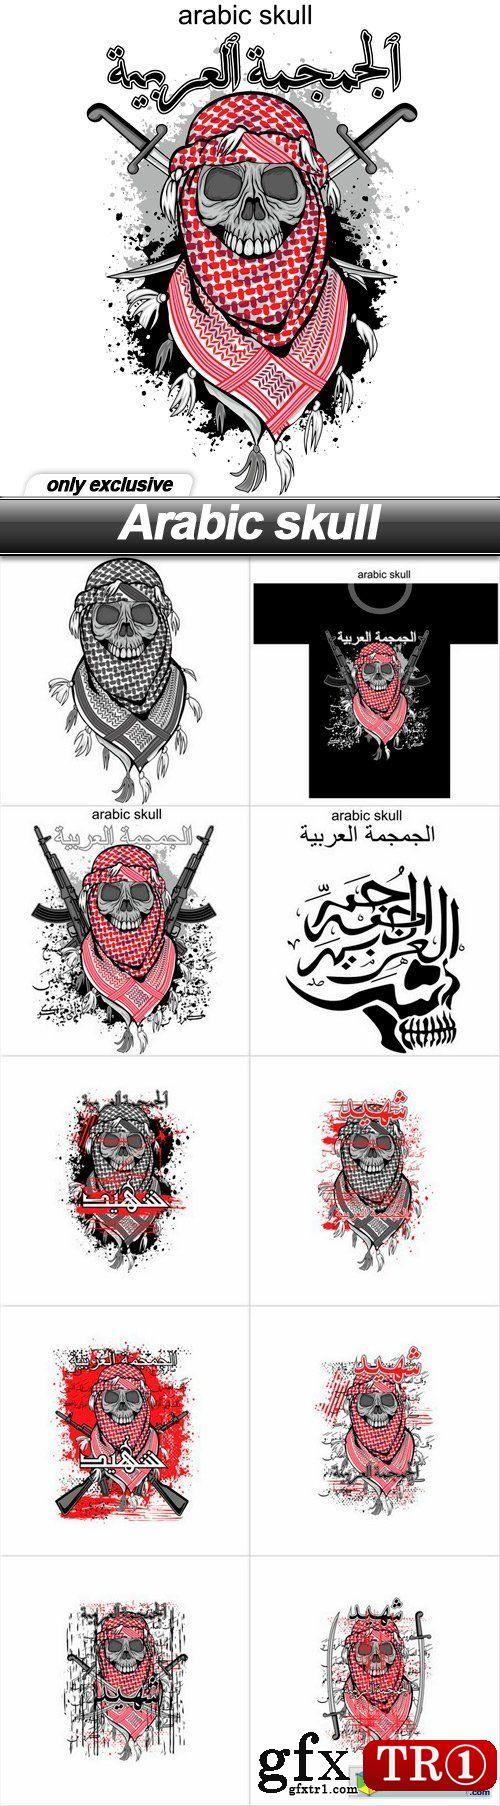 阿拉伯纹身图案大全 阿拉伯纹身图案大全集